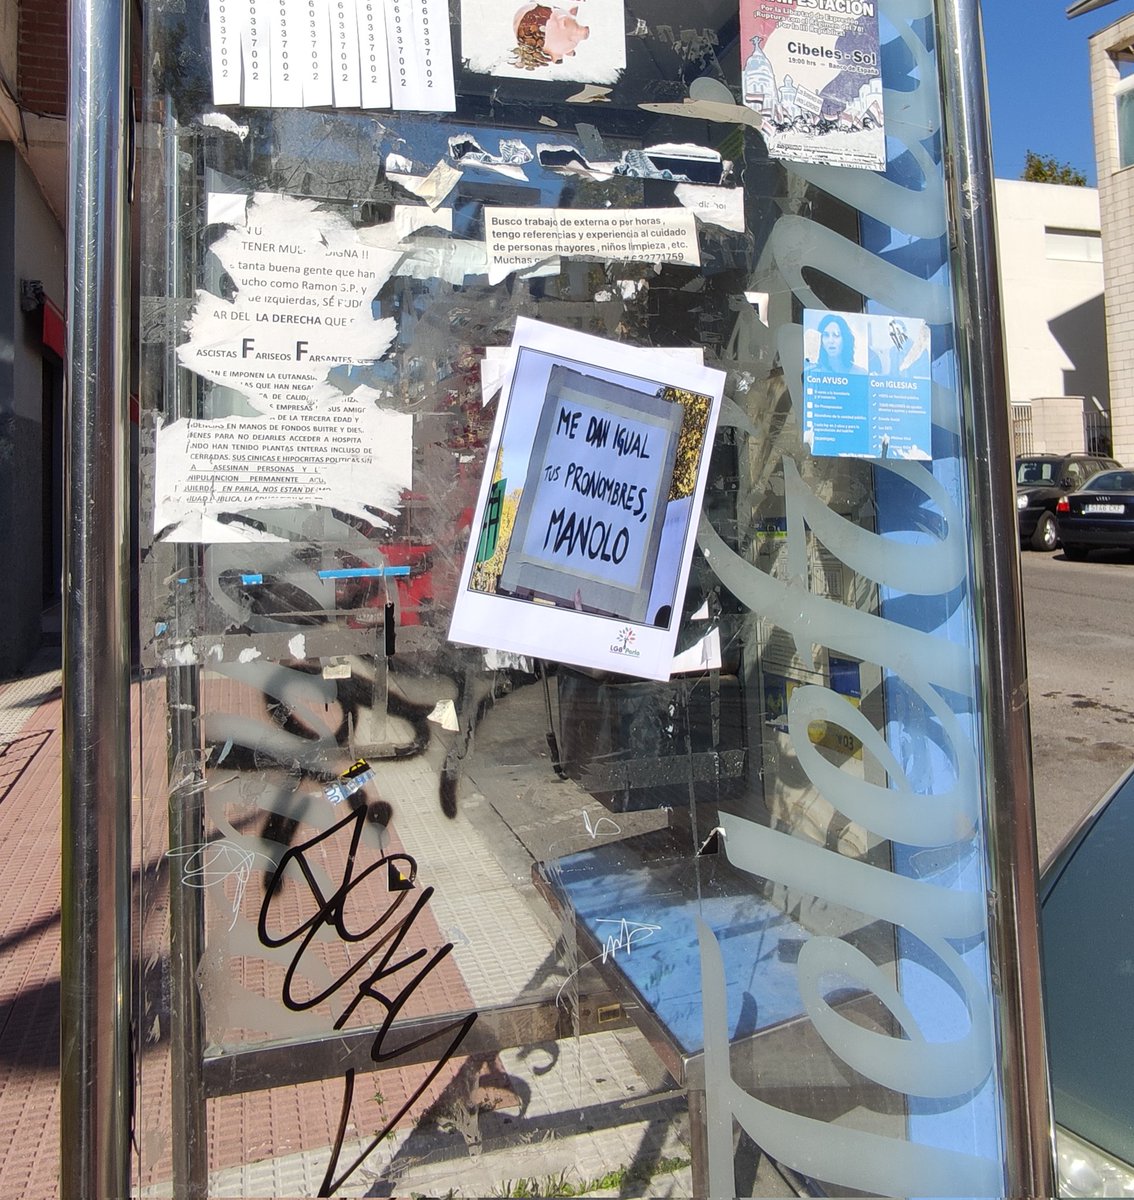 En apoyo a la compañera @Kodama13, hemos impreso carteles con la imagen de su pancarta y los hemos pegado por las calles de #Parla. Si quieres sumarte y poner el cartel en tu barrio, descárgalo aquí: drive.google.com/file/d/14gaJOH… Comparte y únete. ¡Stop Manolo! #YoConKodama 🏳️‍🌈💪🤝